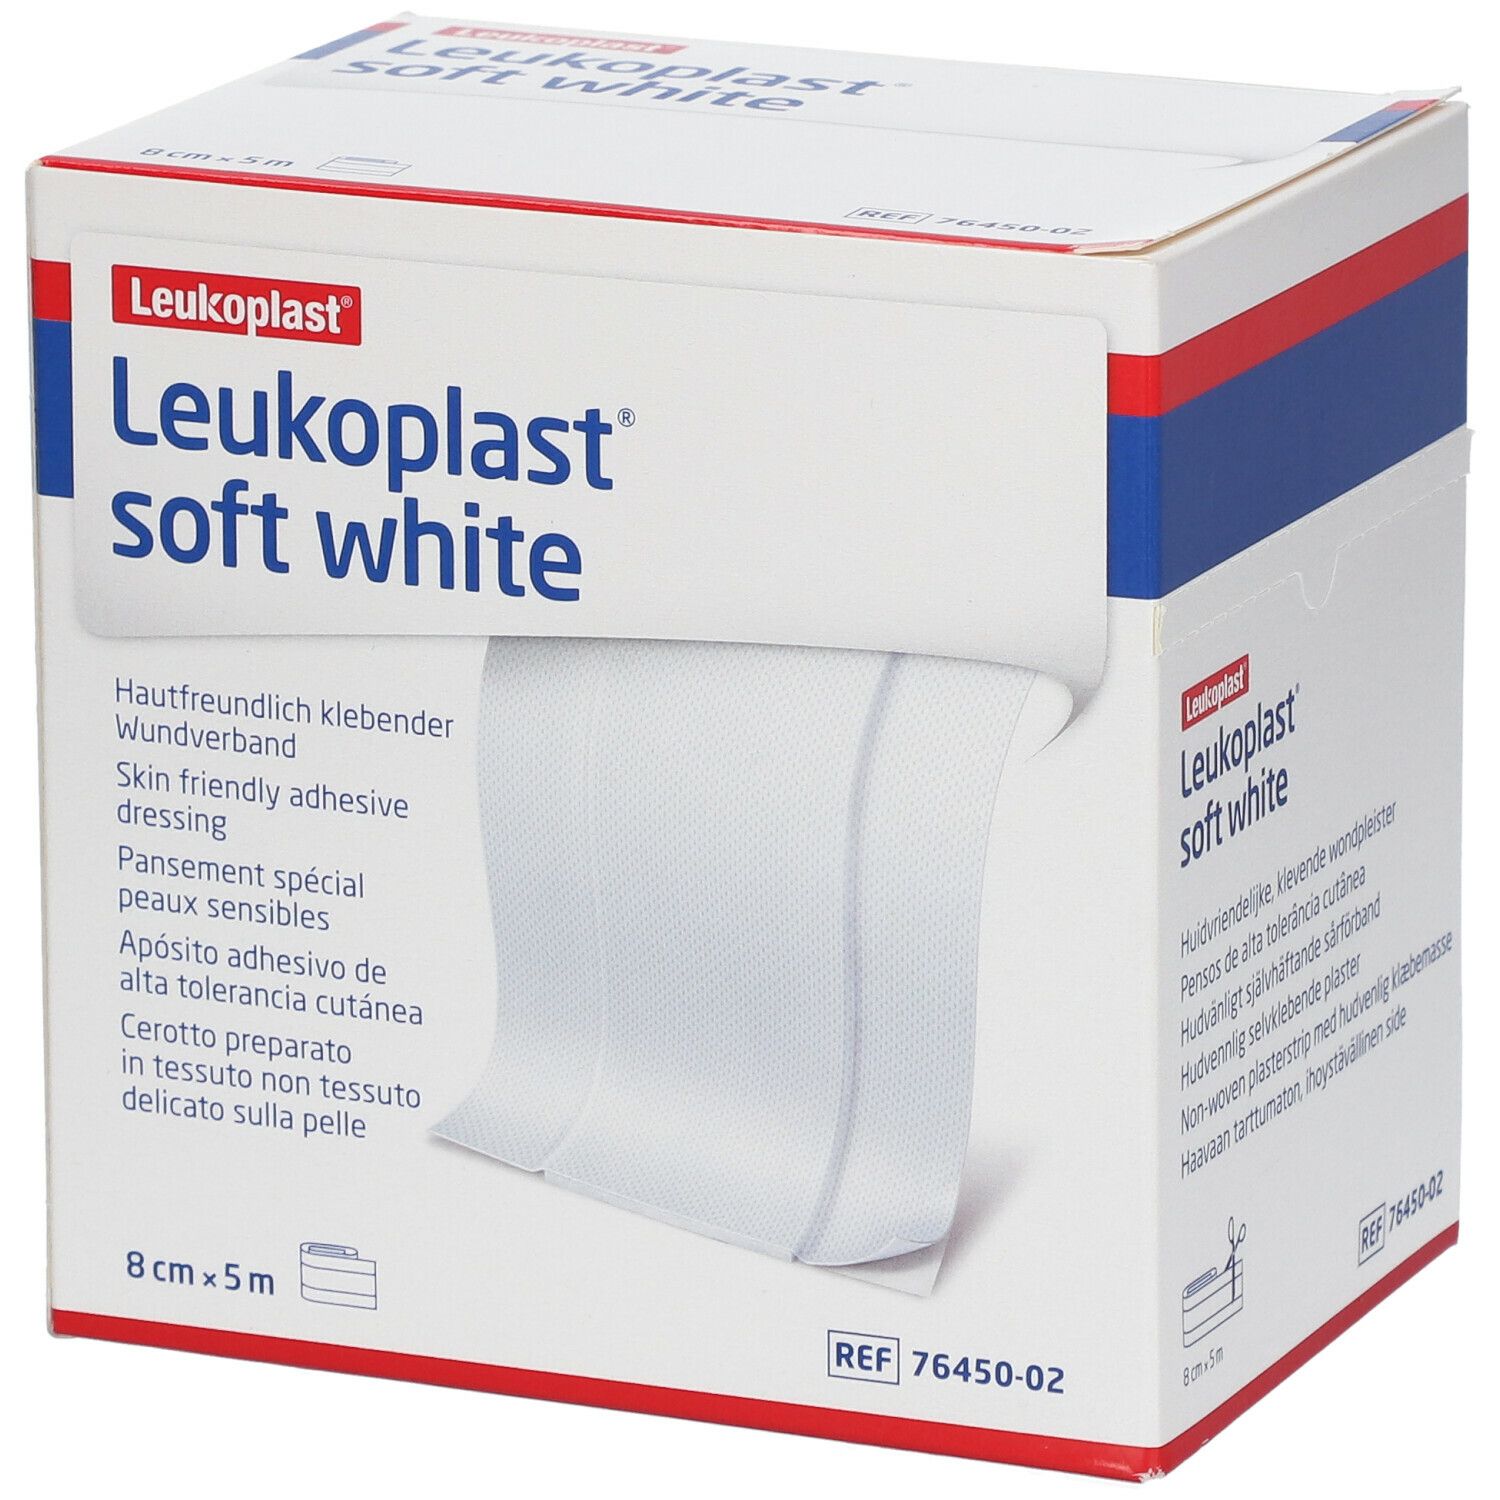 Leukoplast® soft white 8 cm x 5 m